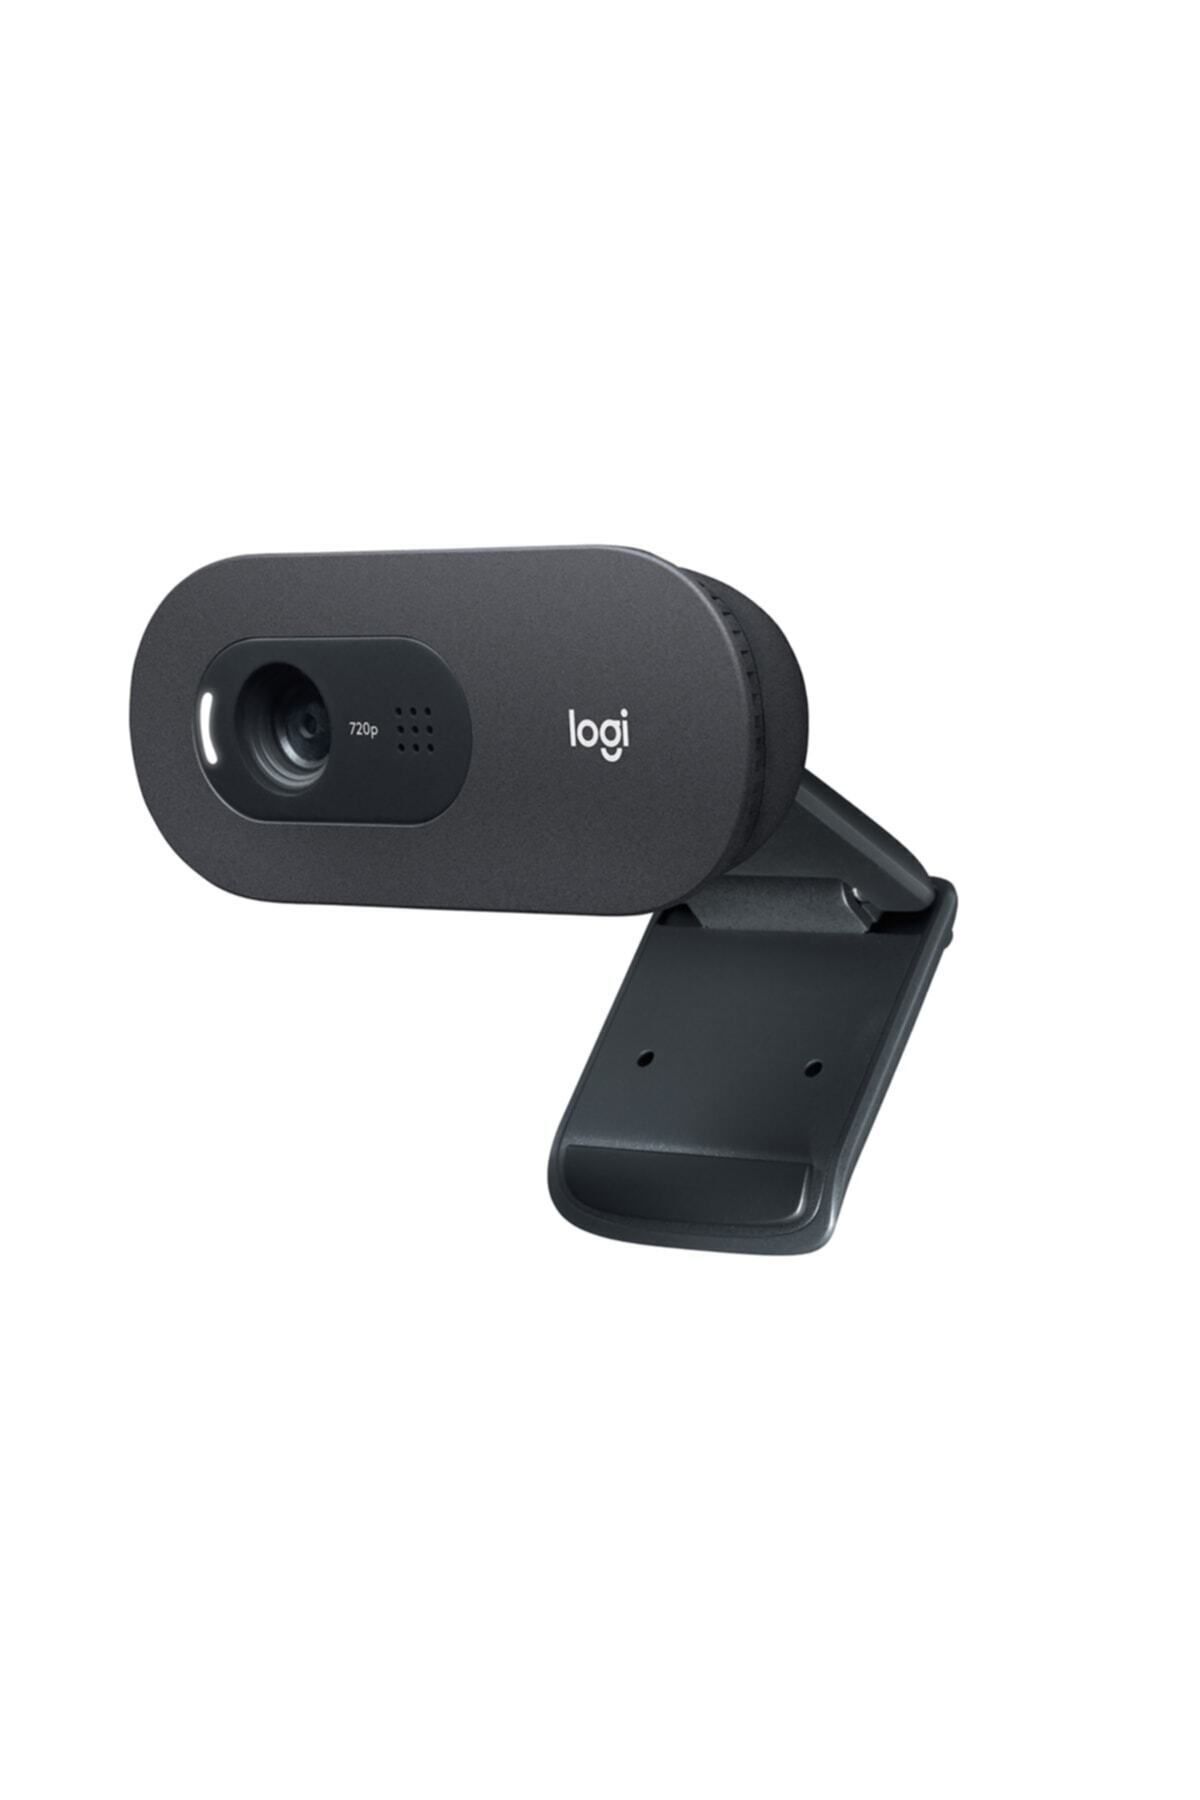 logitech C505 HD Uzun Mesafeli Mikrofonlu Web Kamerası - Siyah